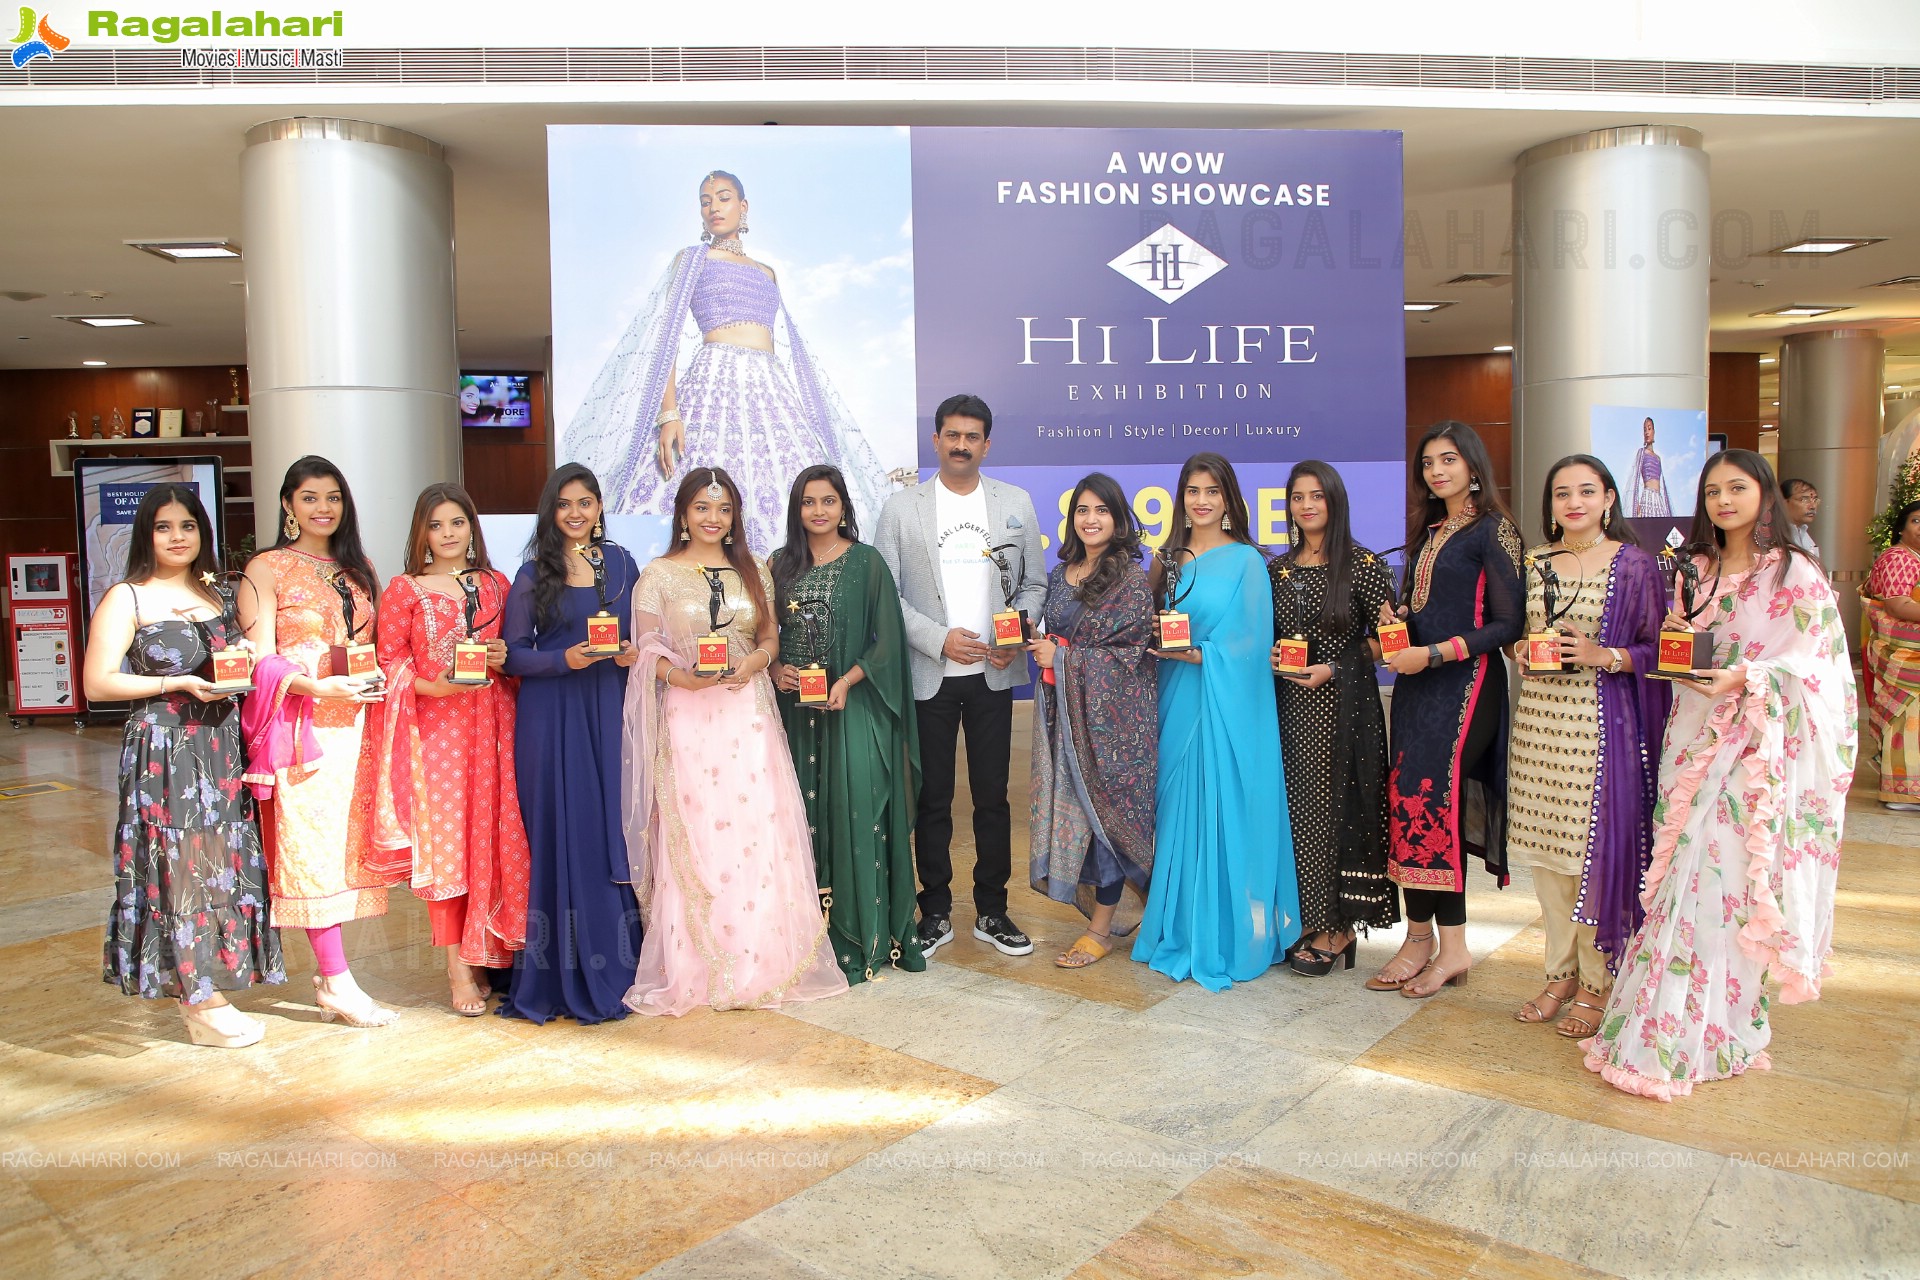 Hi Life Exhibition Fashion Influencers Awards 2022